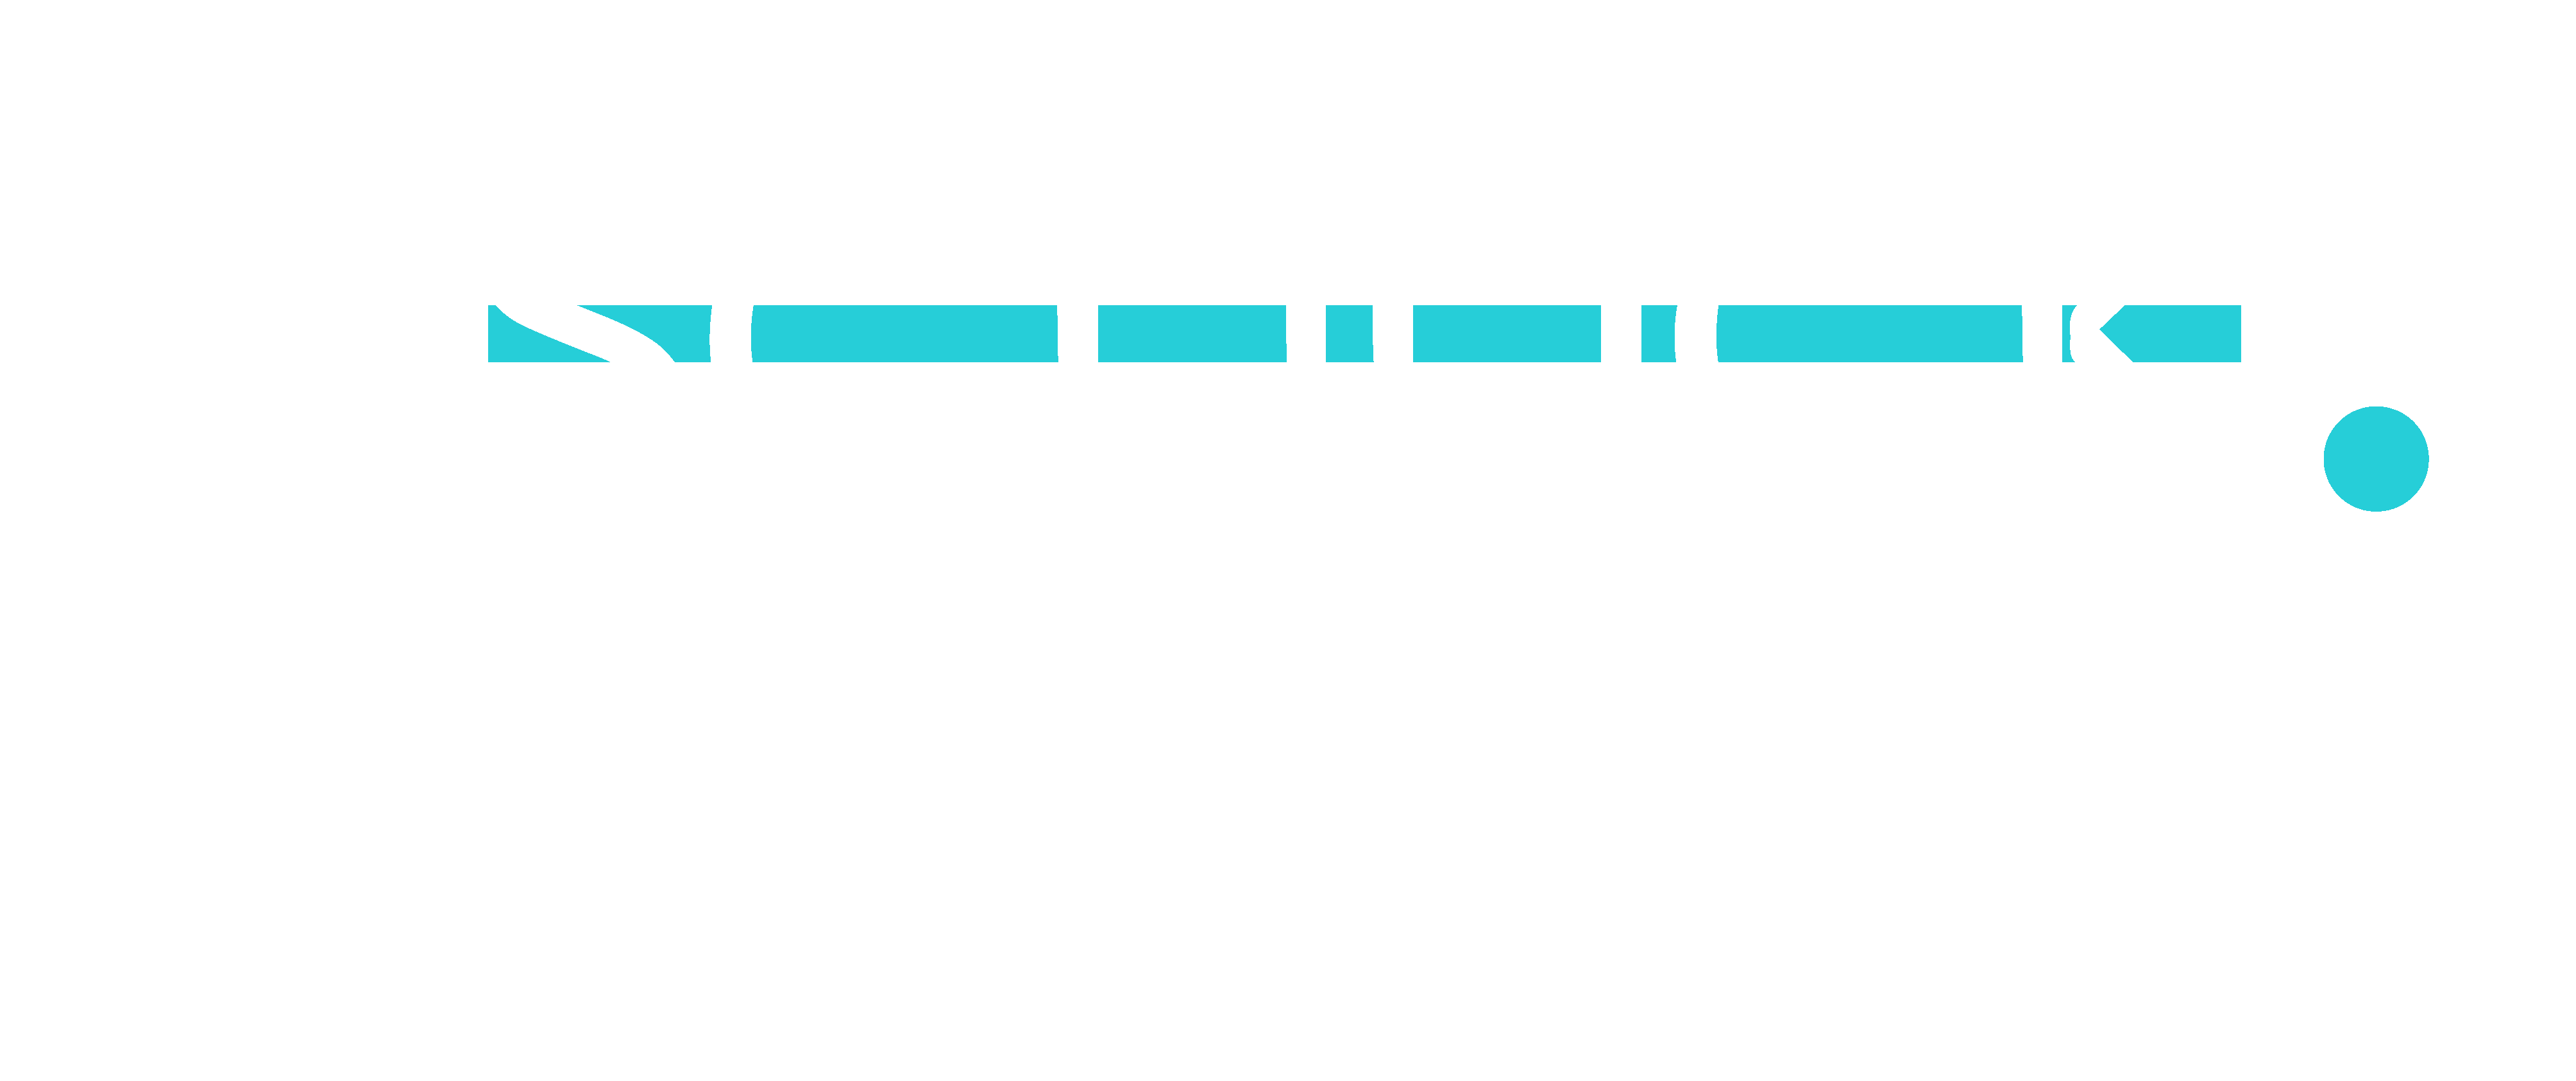 TheSchuck.Agency – Fractional CMO + CRO Services